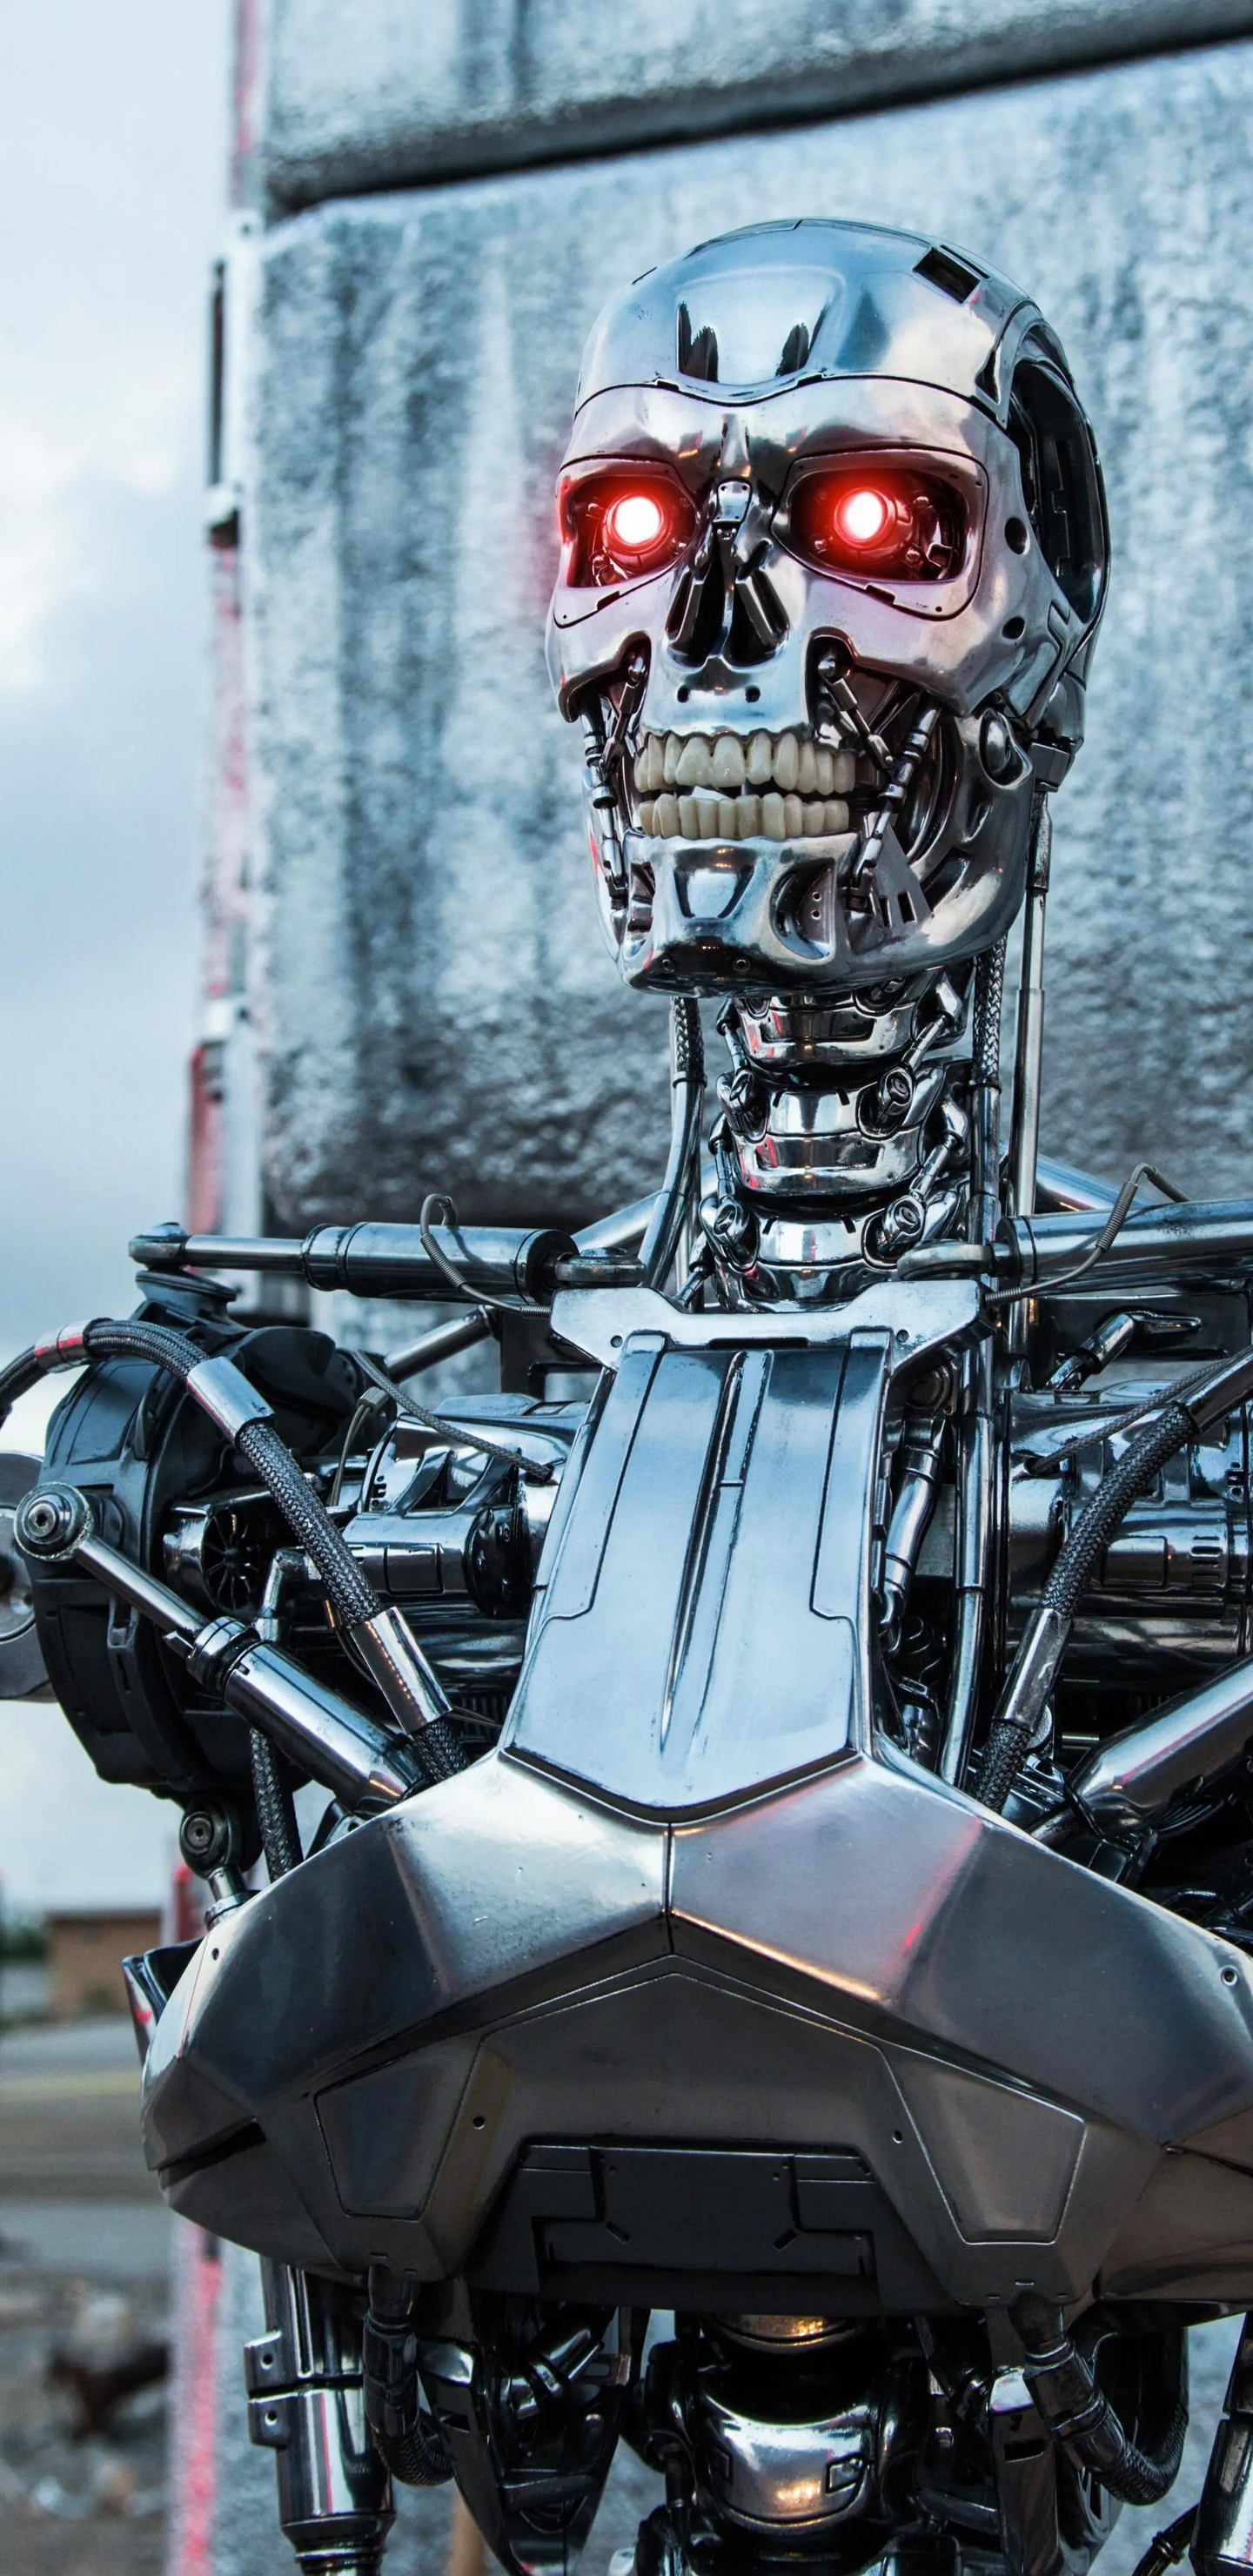 Image: Terminator, scrap metal, junkyard, wall, sky